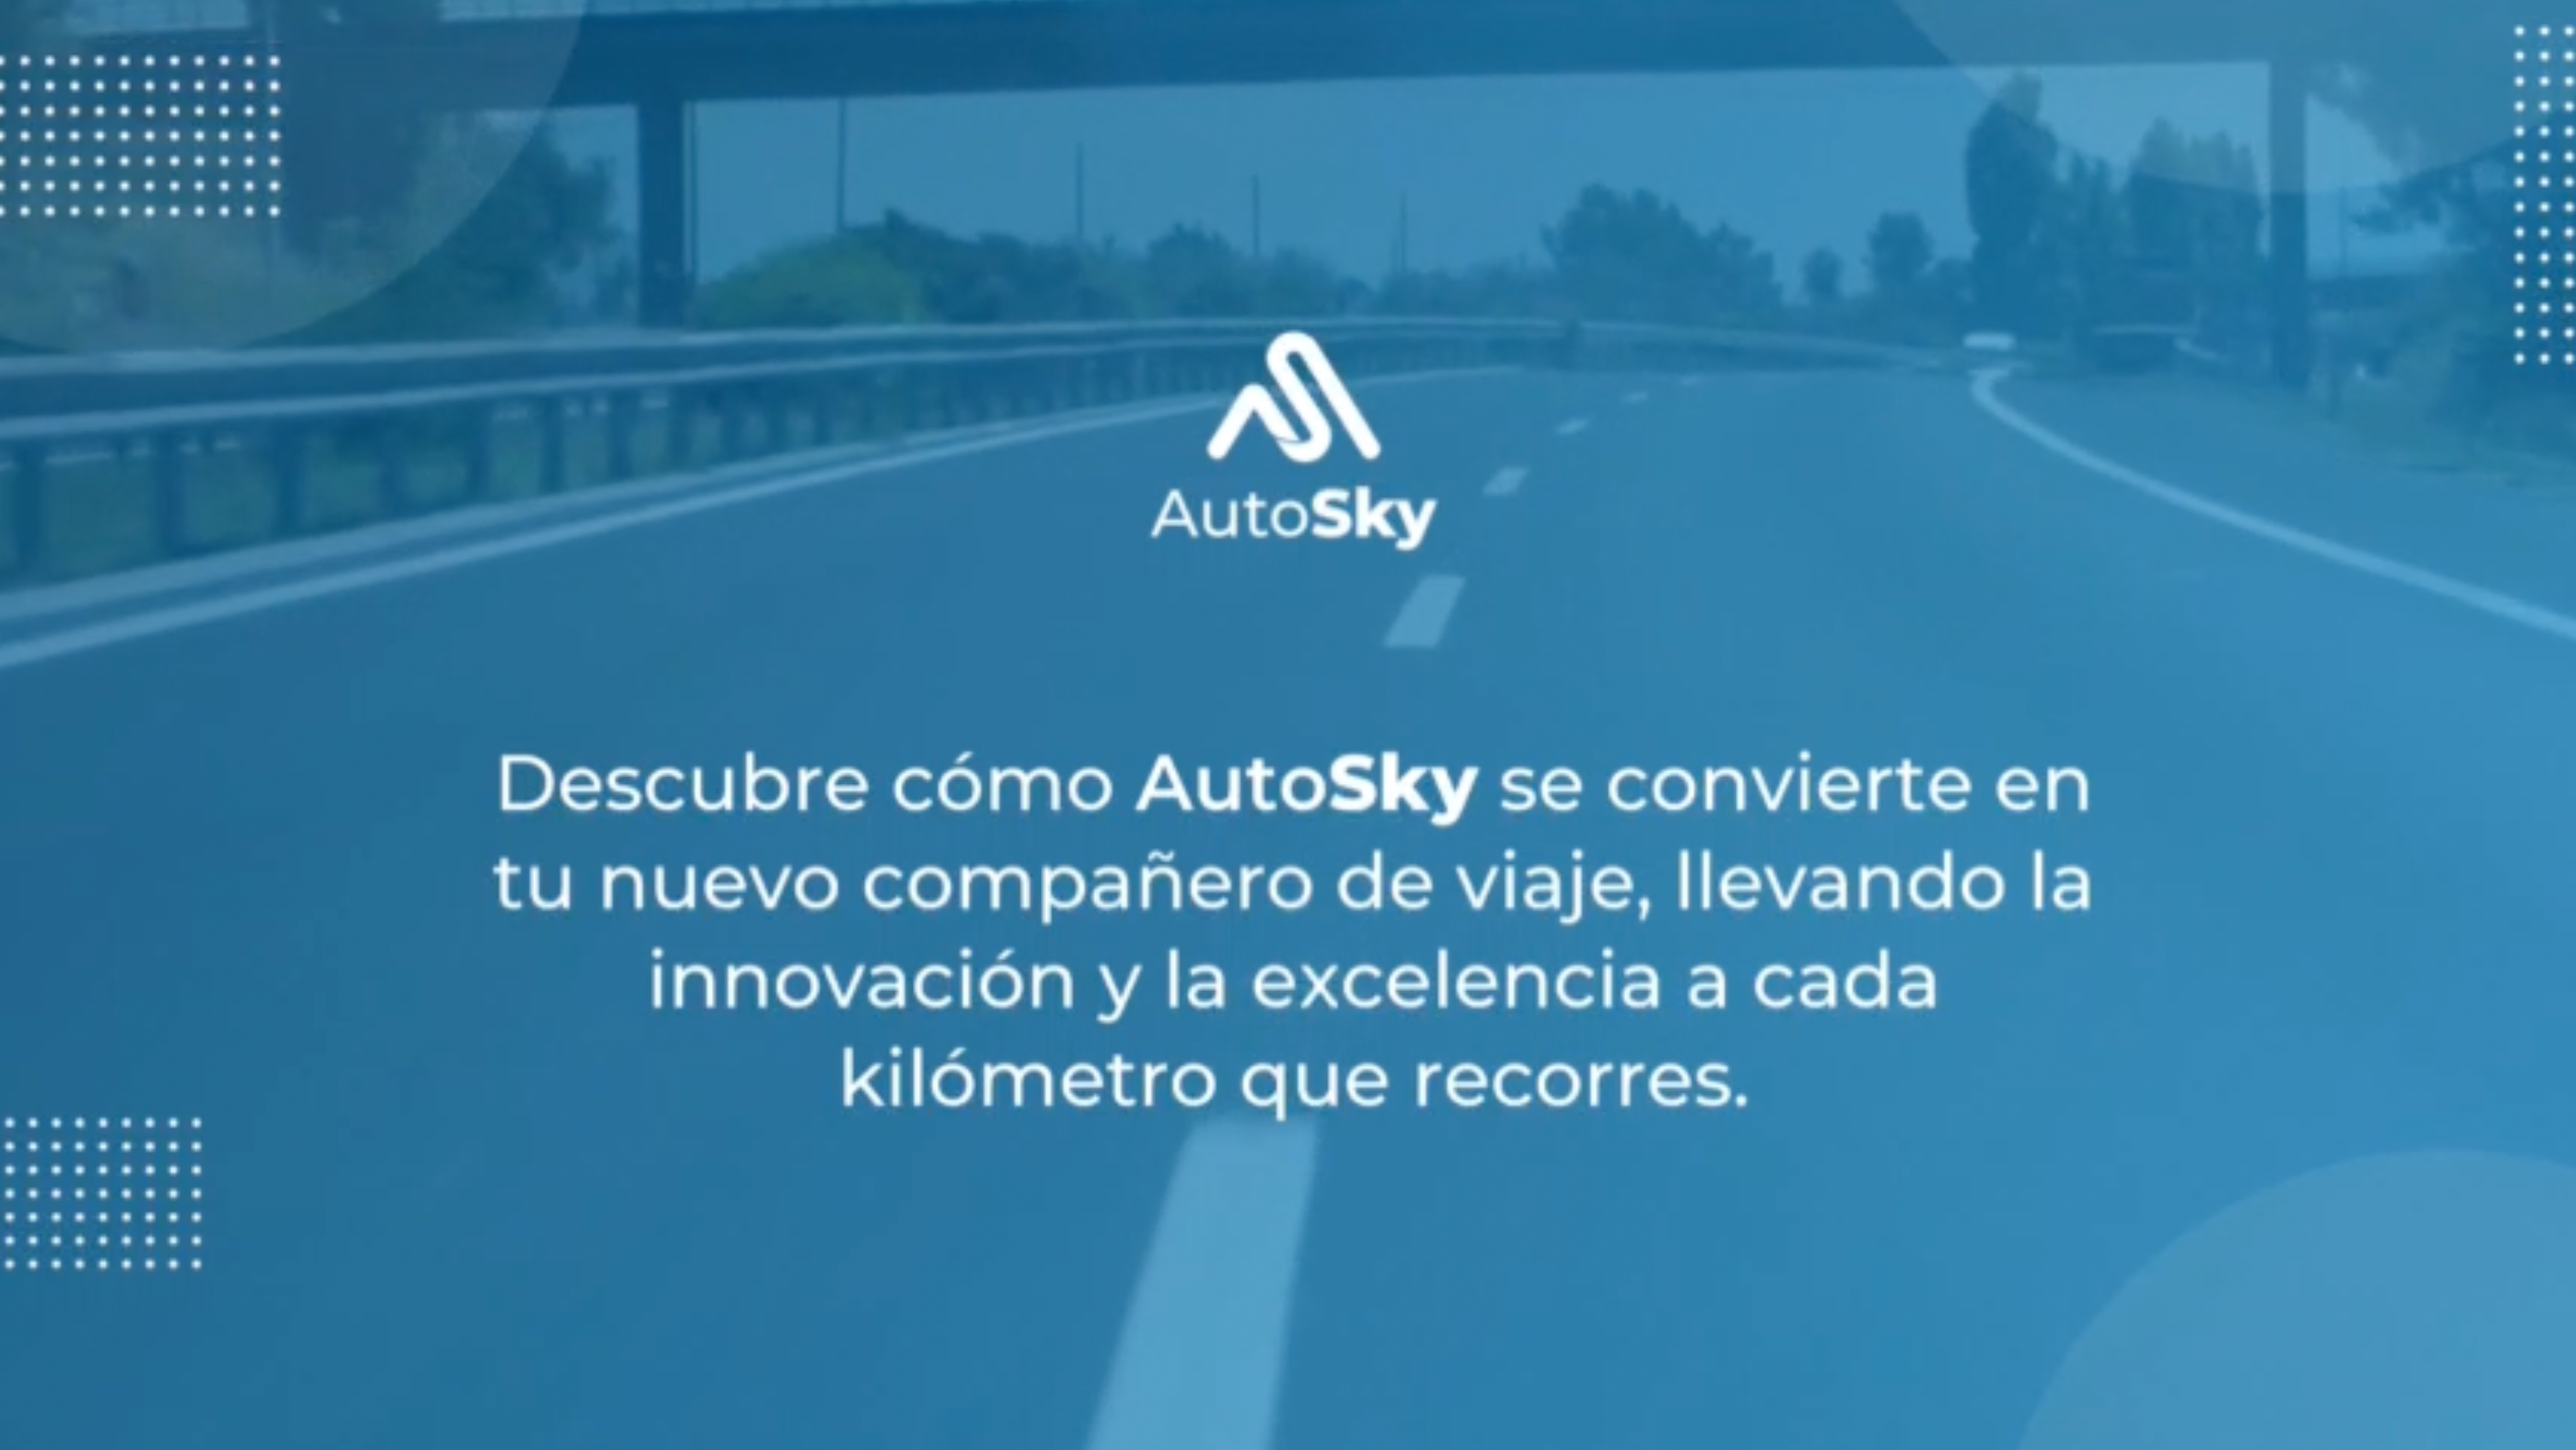 Load video: Transforma tu forma de conducir con AutoSkyAutoSky es la innovación en tecnología vehicular que llega a Colombia para transformar tu experiencia de conducción.Nuestros productos están diseñados para satisfacer todas tus necesidades y mucho más, ofreciéndote soluciones avanzadas que llevan tu experiencia al volante al siguiente nivel.Conoce nuestros productosPro SlimADAPTADOR INALÁMBRICO CARPLAYTransforma CarPlay alámbrico de fábrica en inalámbrico,  su acabado estilo fibra de carbón no solo agrega elegancia a tu vehículo, sino que también ofrece una protección duradera contra los arañazos del uso diario.Edición microADAPTADOR INALÁMBRICO CARPLAYConvierte tu CarPlay alámbrico en inalámbrico y disfruta de todas tus aplicaciones favoritas sin cables con nuestro acabado mate, perfecto para adaptarse a cualquier vehículo.Edición DeluxeAi box liteTransforma tu CarPlay o Android Auto con cable en inalámbrico y disfruta de aplicaciones como Netflix y YouTube desde tu carro.Ai box lite plusCon dos módulos Wi-Fi integrados, cambia sin esfuerzo entre CarPlay o Android Auto y el modo Streaming para disfrutar de servicios de entretenimiento como Netflix y YouTube al instante.Nano series ADAPTADOR INALÁMBRICO CARPLAYConvierte tu CarPlay alámbrico en inalámbrico con estilo. Esta versión es la más pequeña del mercado y te permite disfrutar todas tus aplicaciones favoritas sin cables.Nano series ADAPTADOR INALÁMBRICO ANDROID AUTO Da el salto a un Android Auto inalámbrico con estilo. Nuestra versión más compacta te permite disfrutar de todas tus aplicaciones favoritas sin cables.Descubre cómo AutoSky se convierte en tu nuevo compañero de viaje, llevando la innovación y la excelencia a cada kilómetro que recorres.